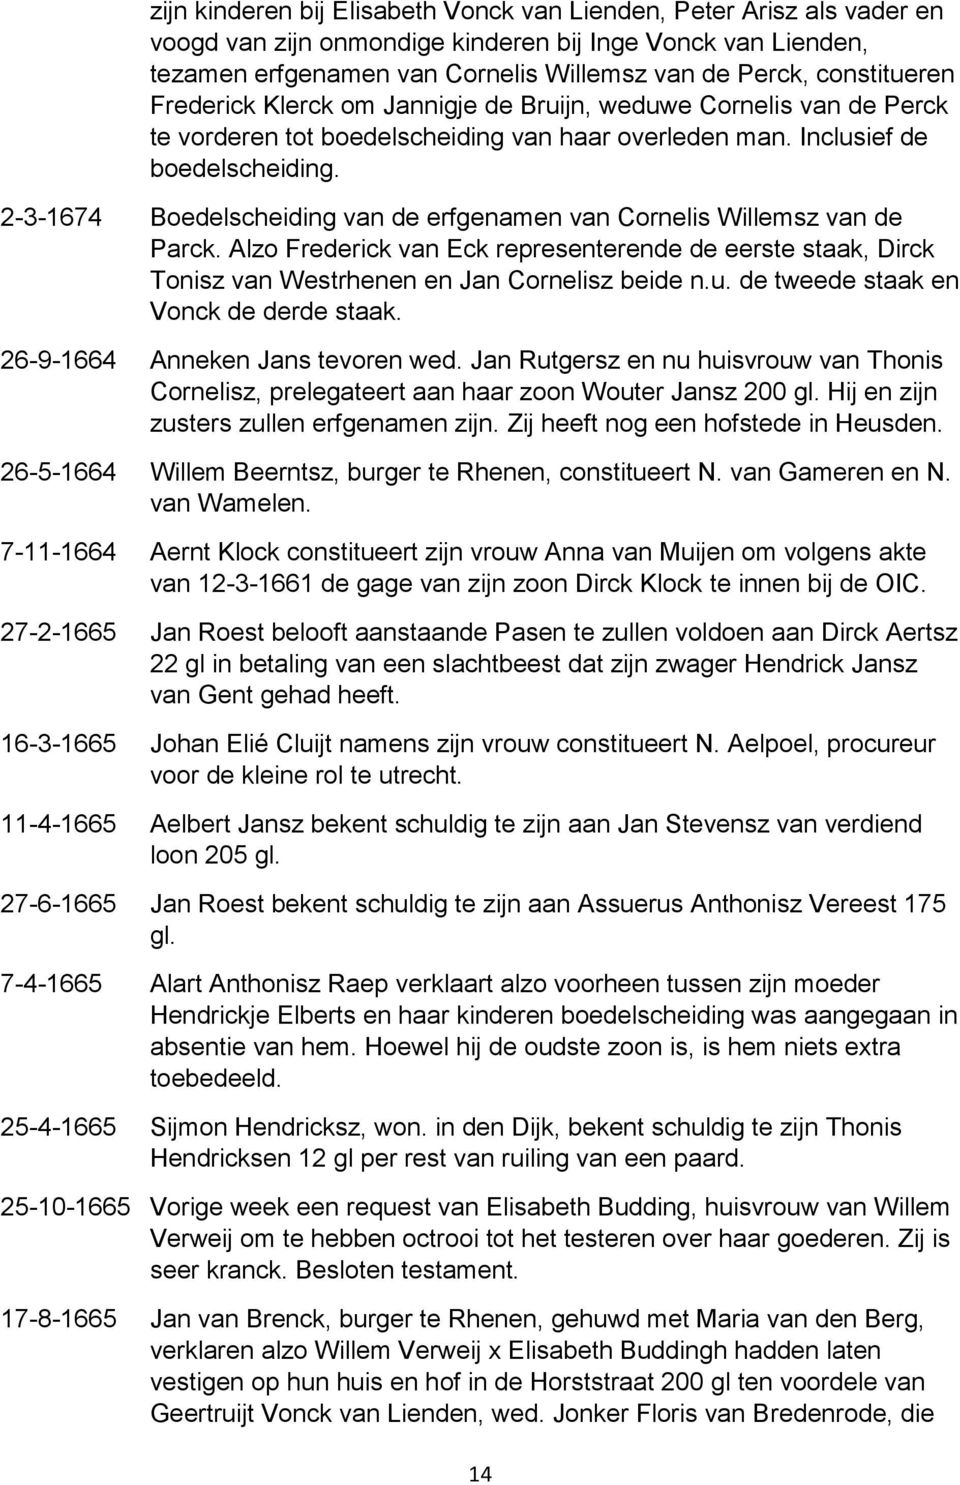 2-3-1674 Boedelscheiding van de erfgenamen van Cornelis Willemsz van de Parck. Alzo Frederick van Eck representerende de eerste staak, Dirck Tonisz van Westrhenen en Jan Cornelisz beide n.u.